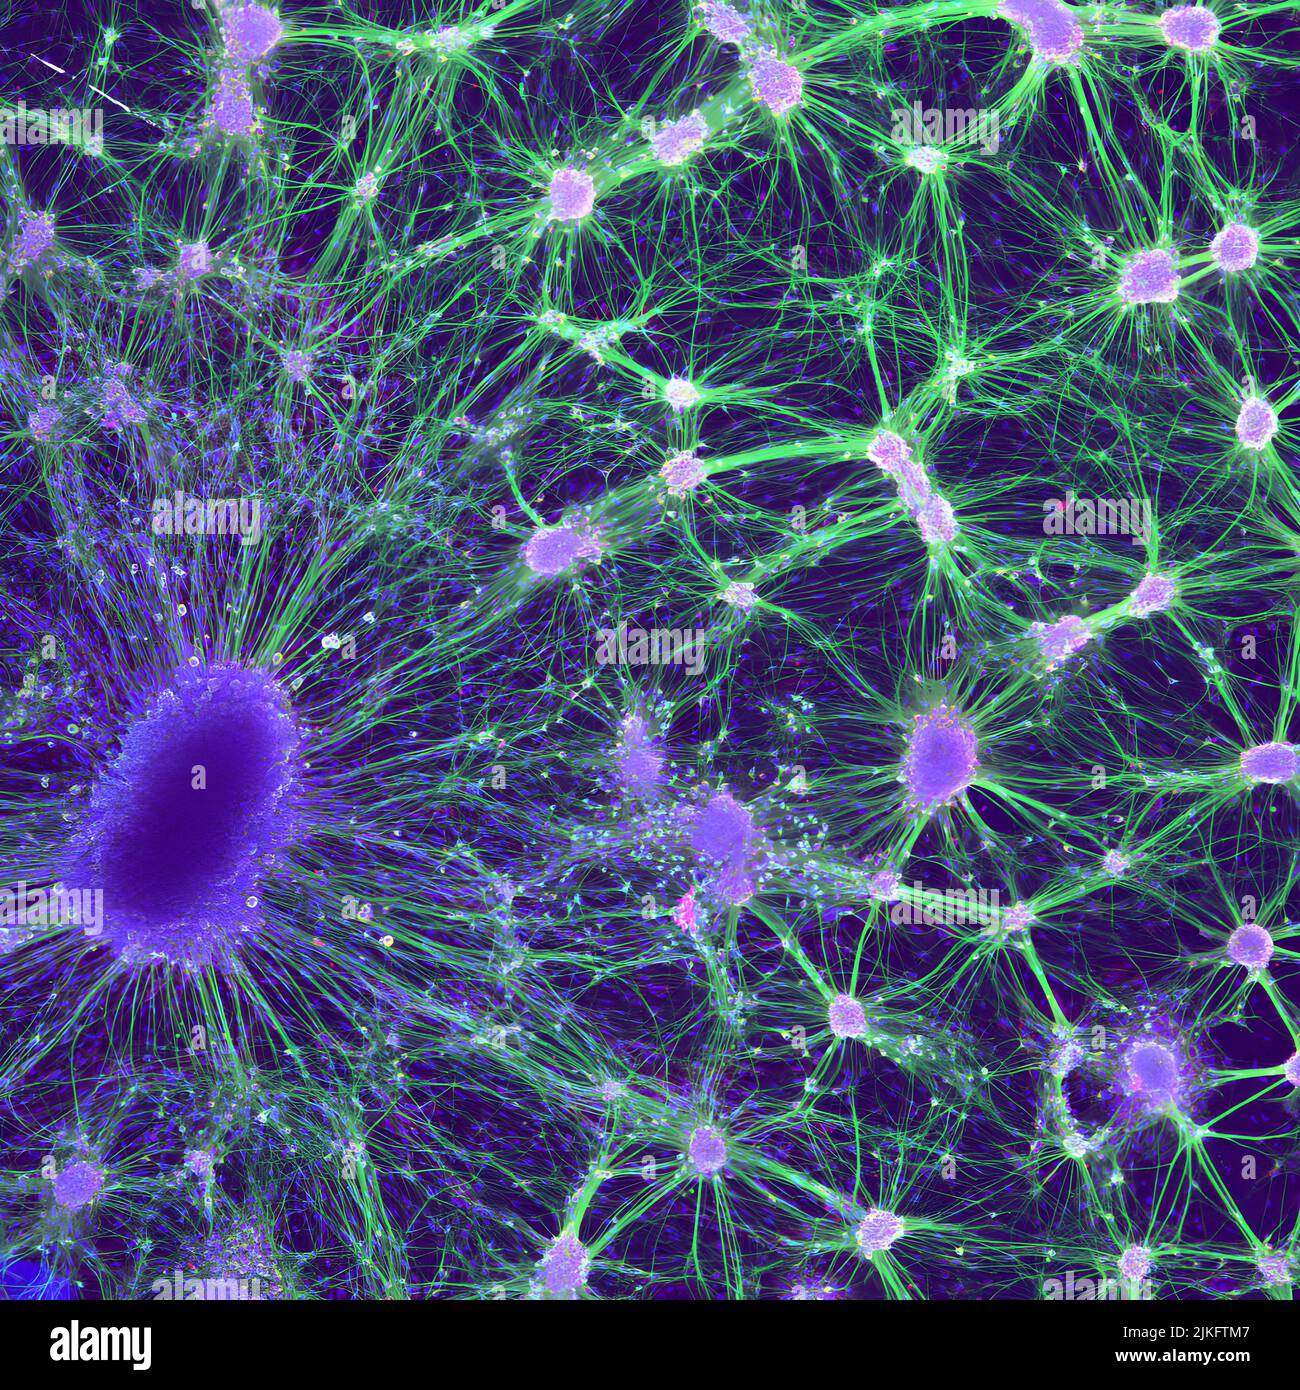 Cette image montre les cellules nerveuses d'un rat embryonnaire croissant dans une boîte de Petri. En bas à gauche se trouve un ganglion de la racine dorsale (violet foncé), qui est un groupe de corps nerveux sensoriel normalement trouvé juste à l'extérieur de la moelle épinière. À droite se trouvent les noyaux (violet clair) et les axones (vert) des neurones moteurs, qui sont les cellules nerveuses impliquées dans la formation de réseaux de signalisation clés. Banque D'Images